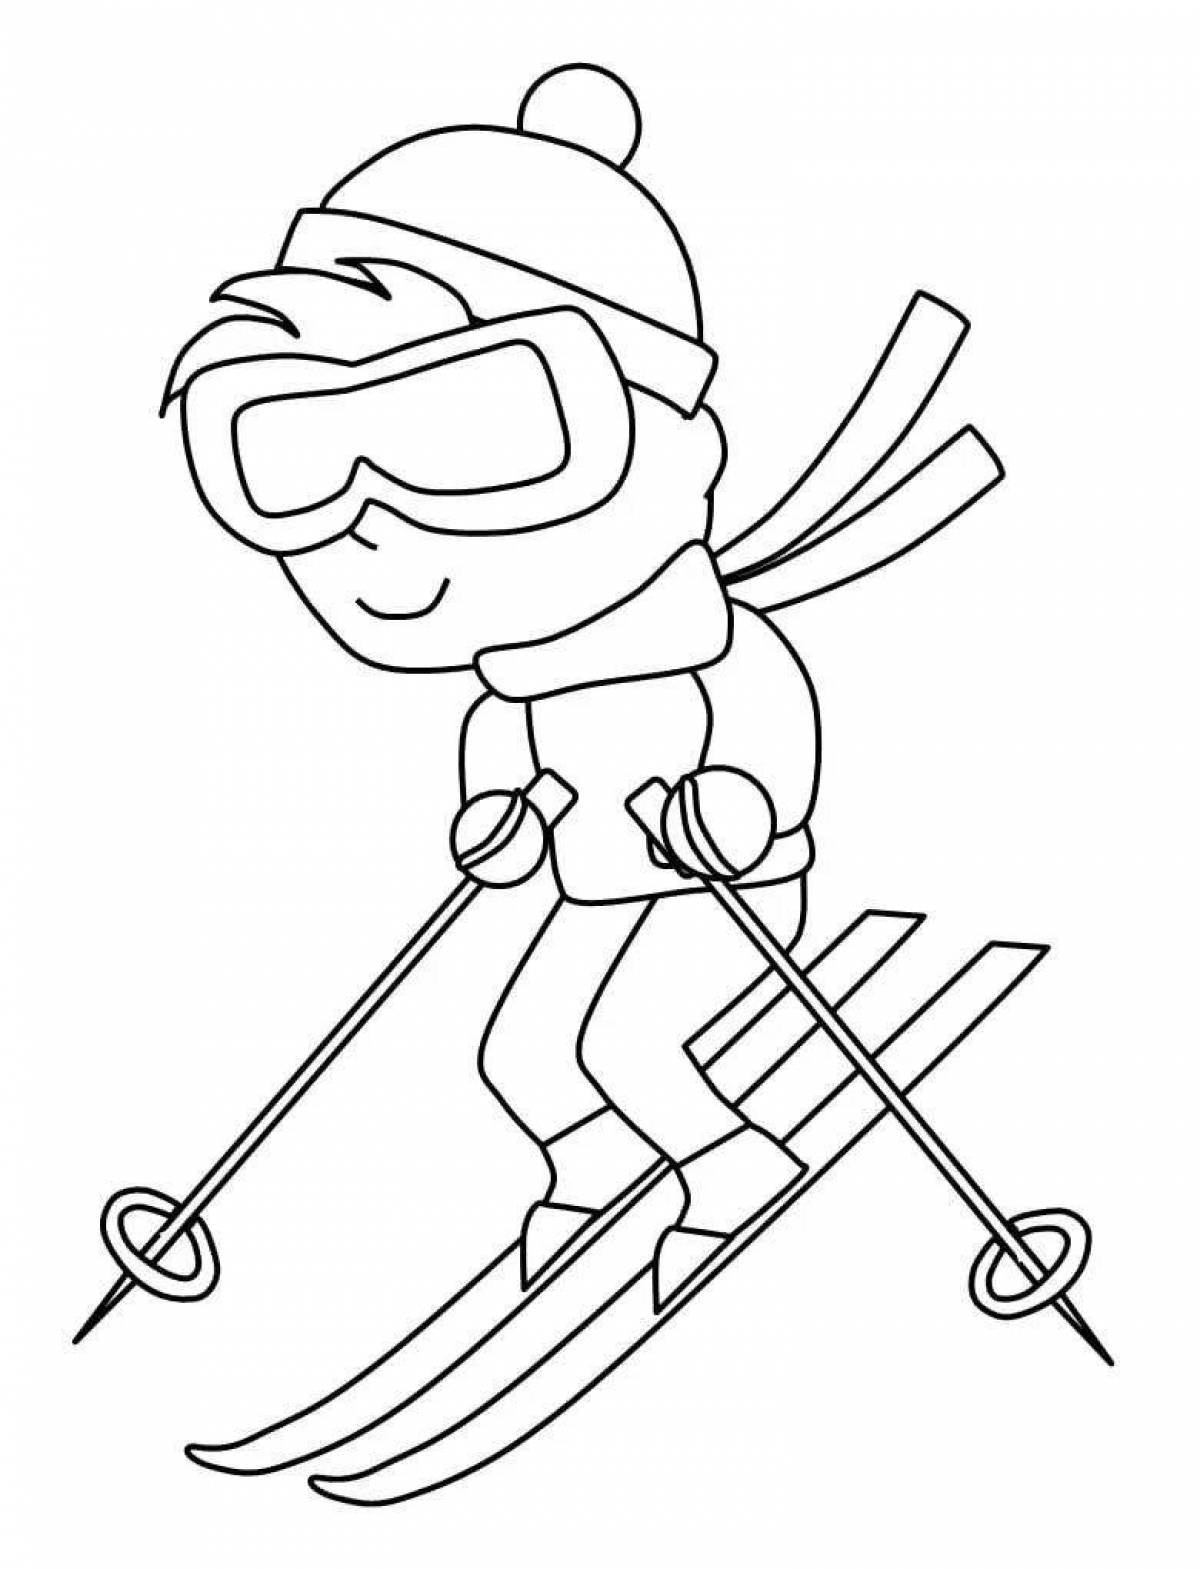 Яркая раскраска для катания на лыжах